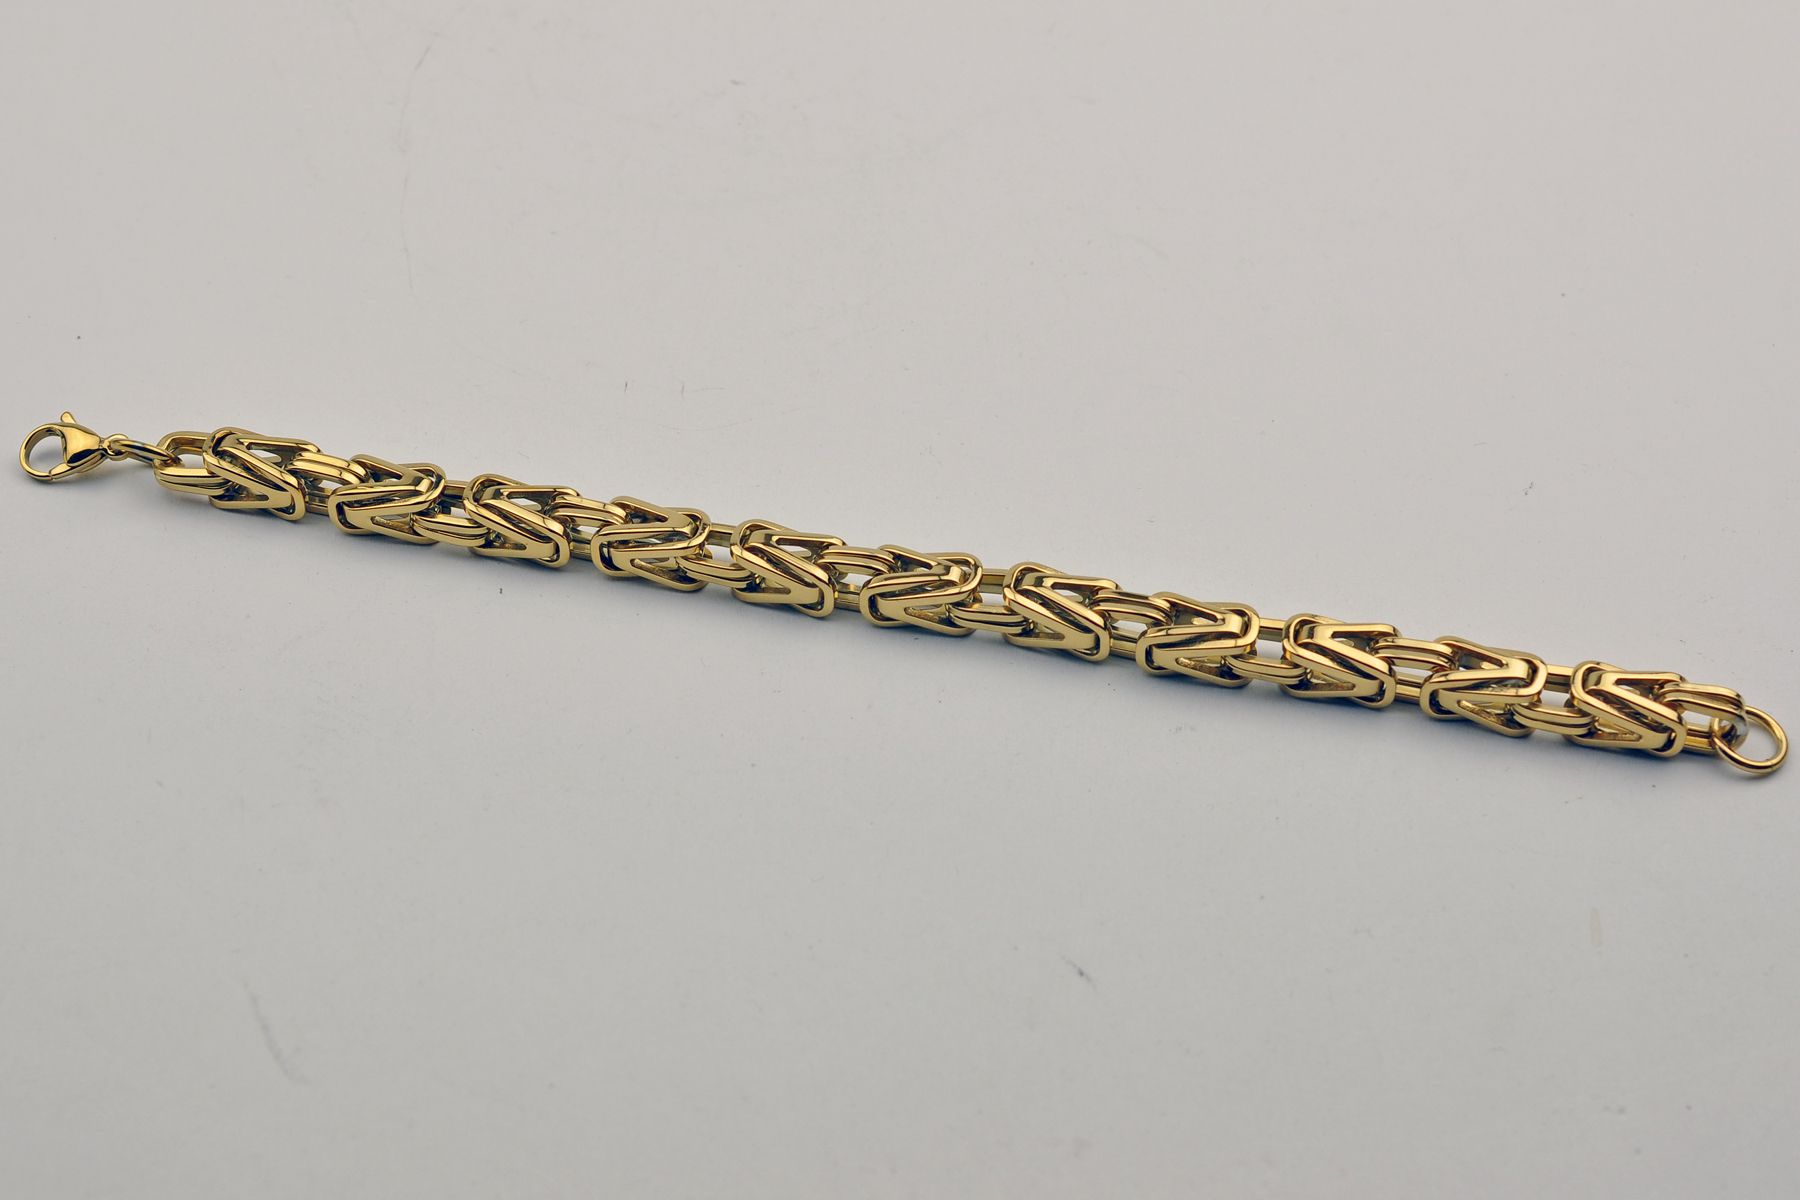 uhrenshop24.ch - Königskette V Halskette Edelstahl 20-70cm massive 8x8mm  PVD vergoldet